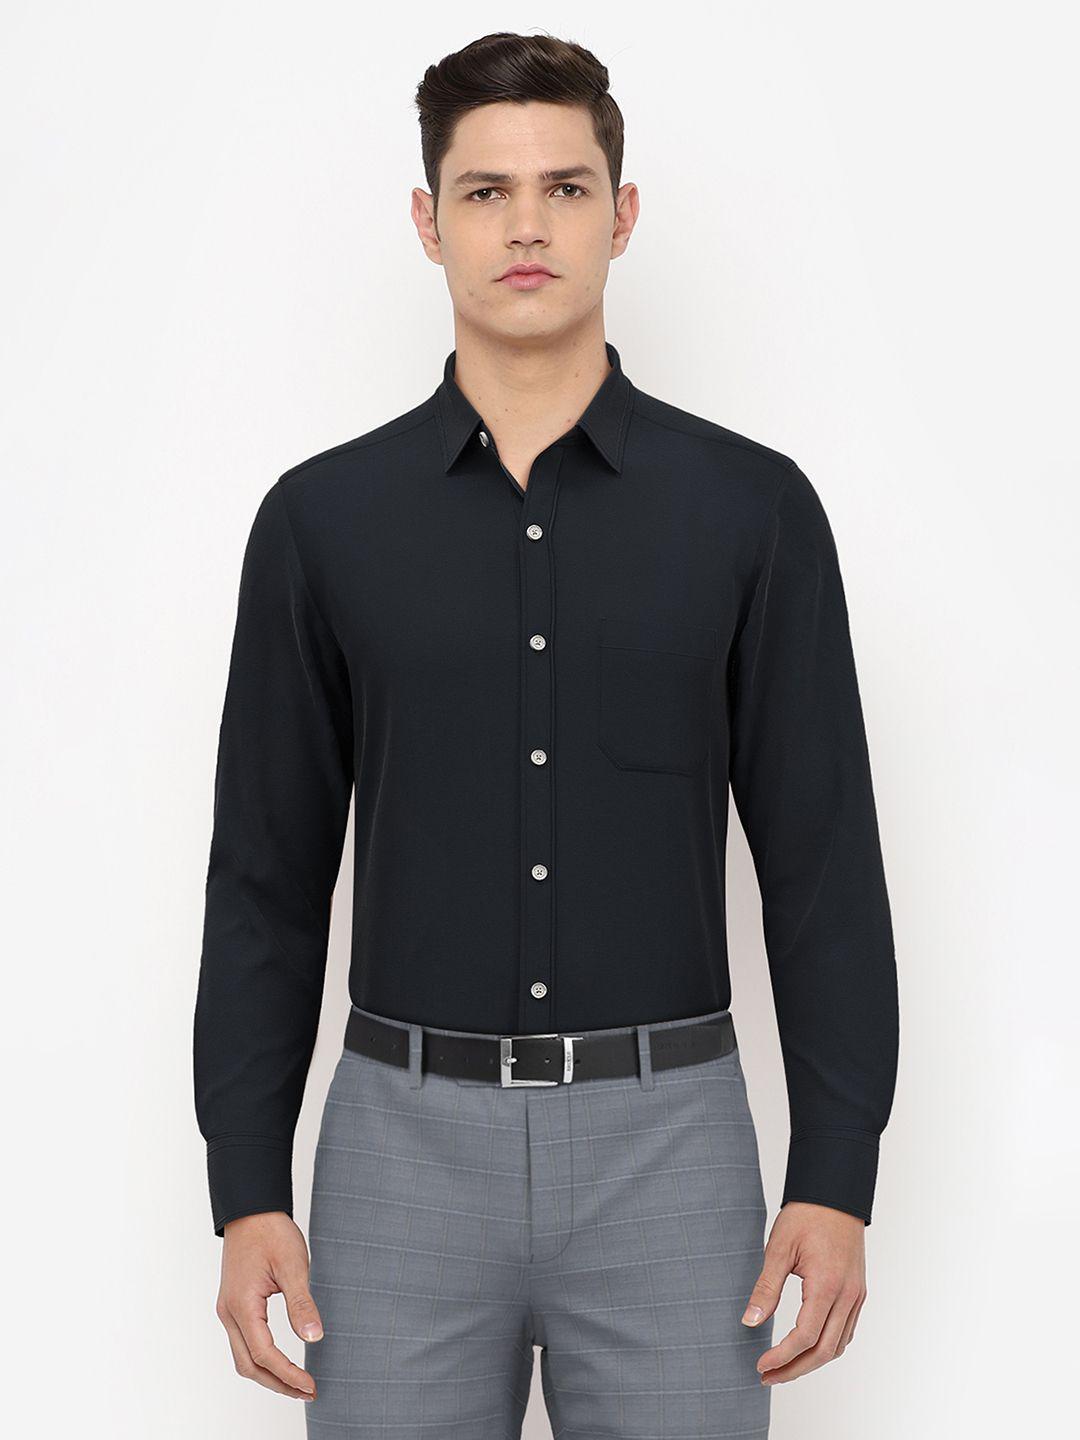 peter england men black solid formal shirt